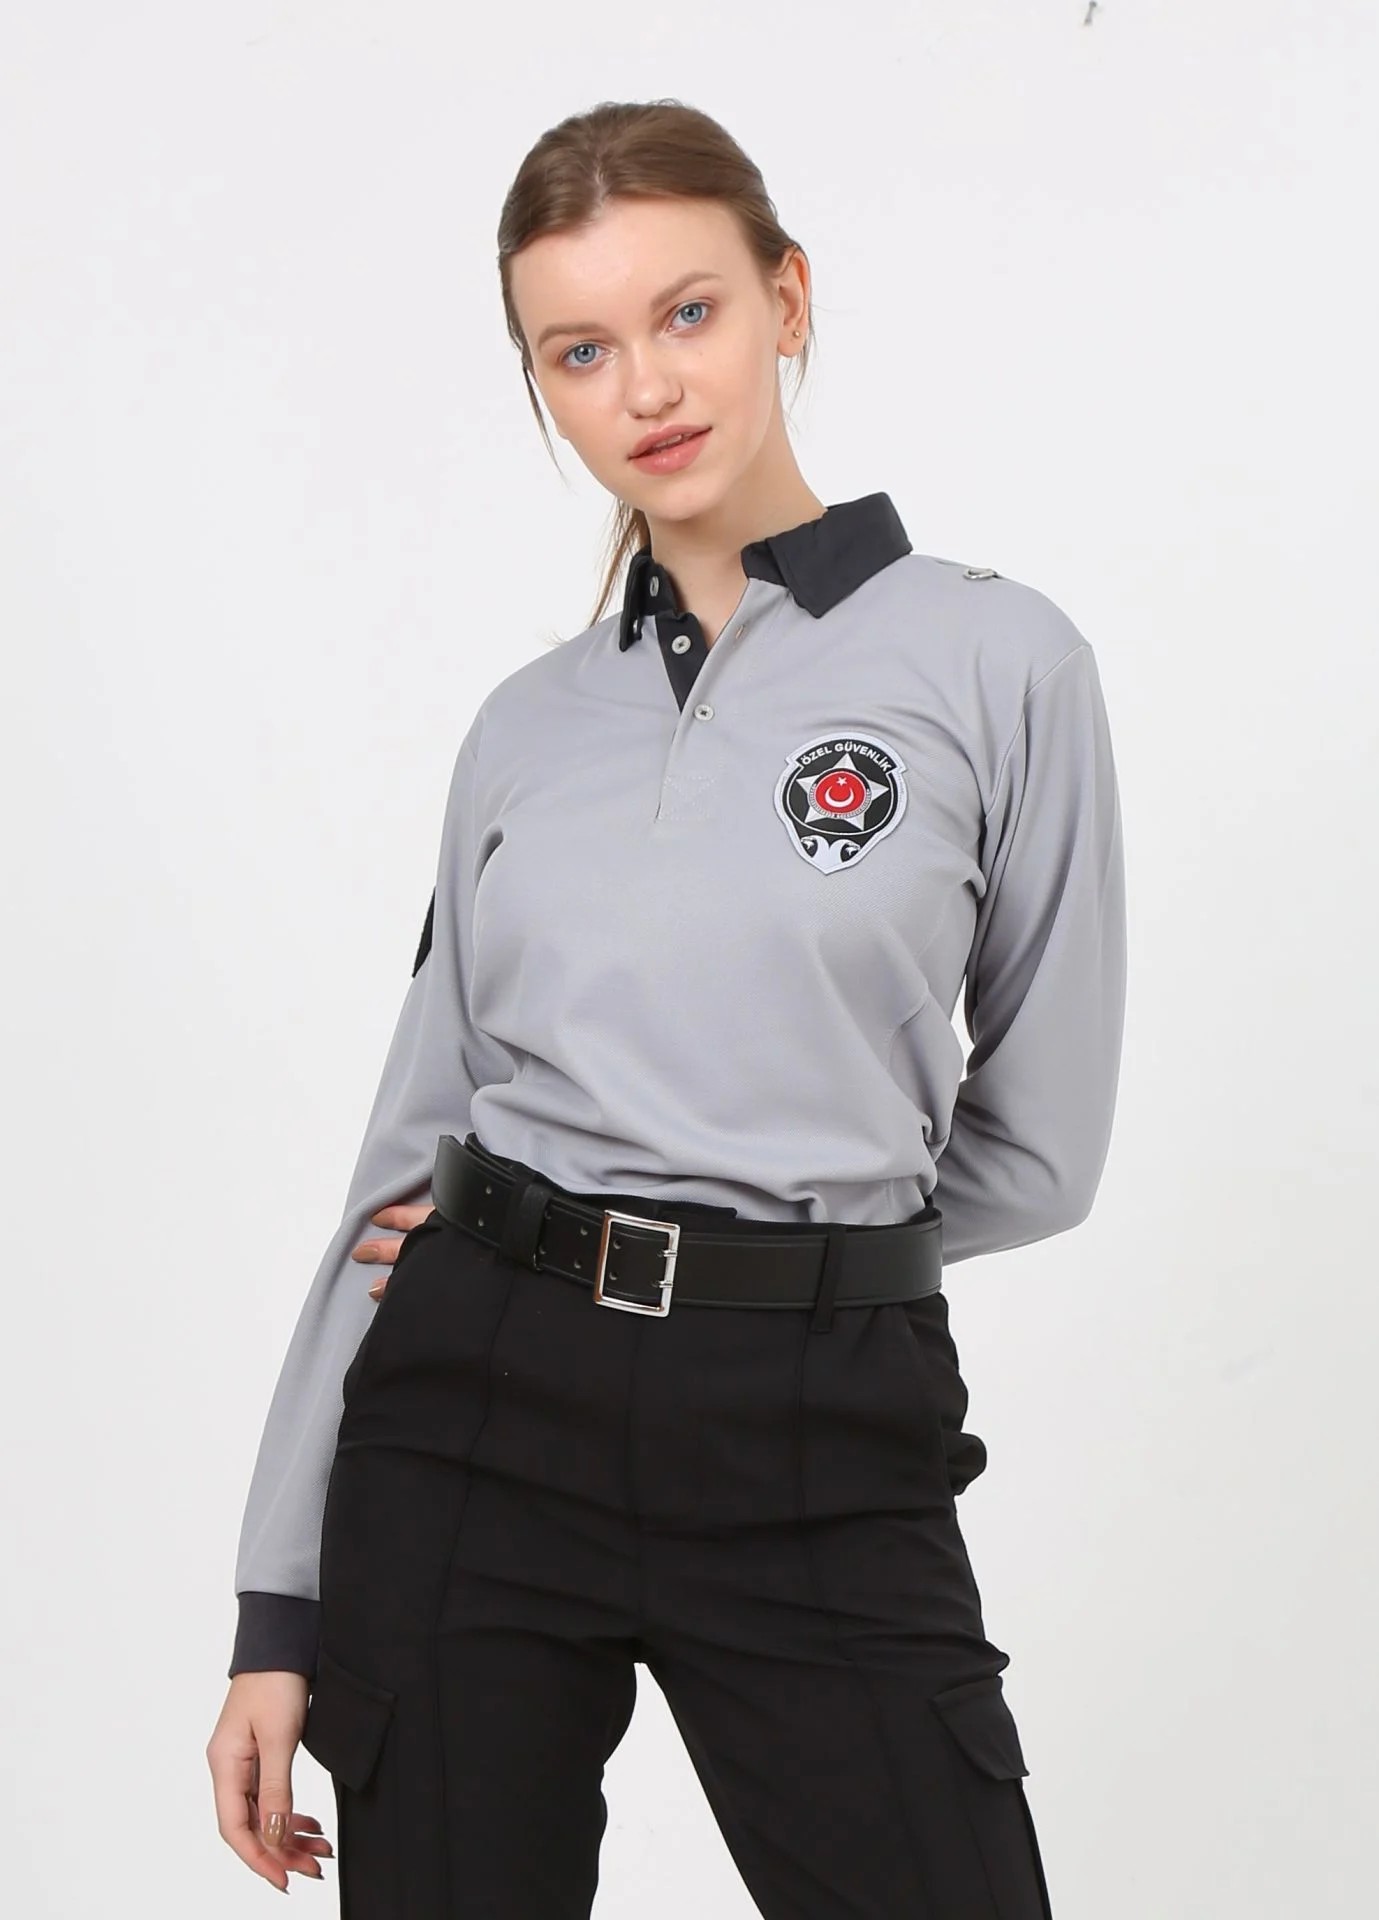 Yeni Kamu Personel Bayan Özel Güvenlik Kışlık Uzun Kollu Polo Yaka Tişört